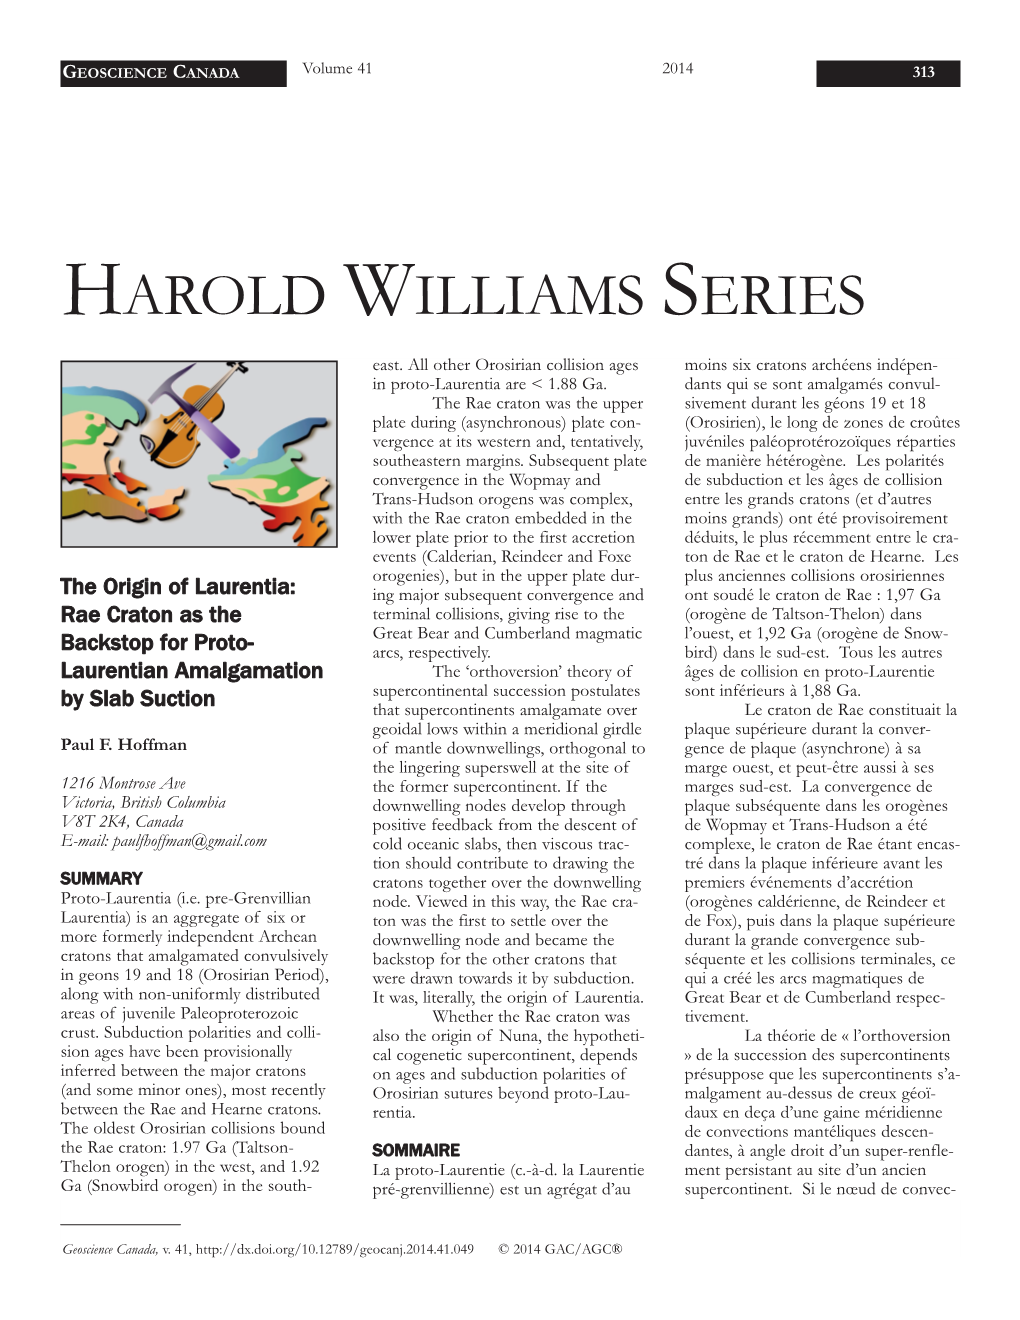 Harold Williams Series